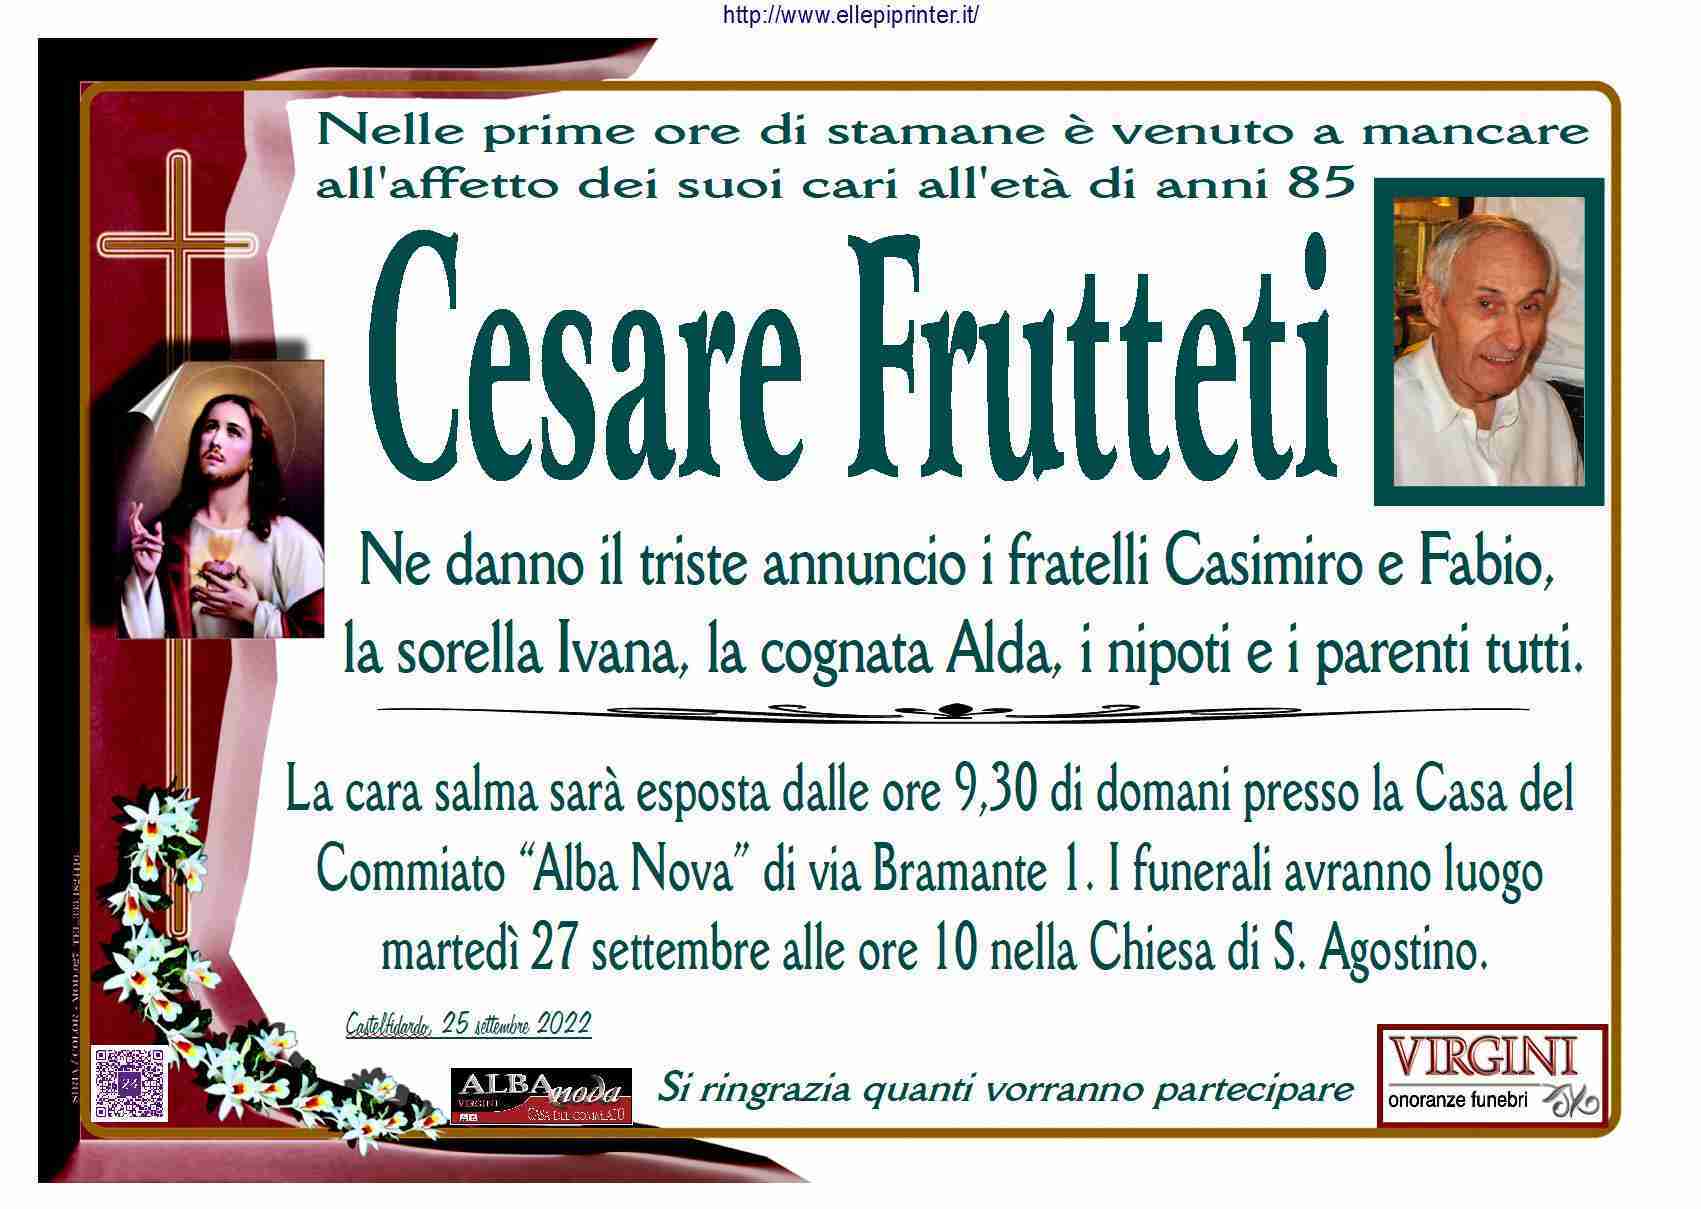 Cesare Frutteti